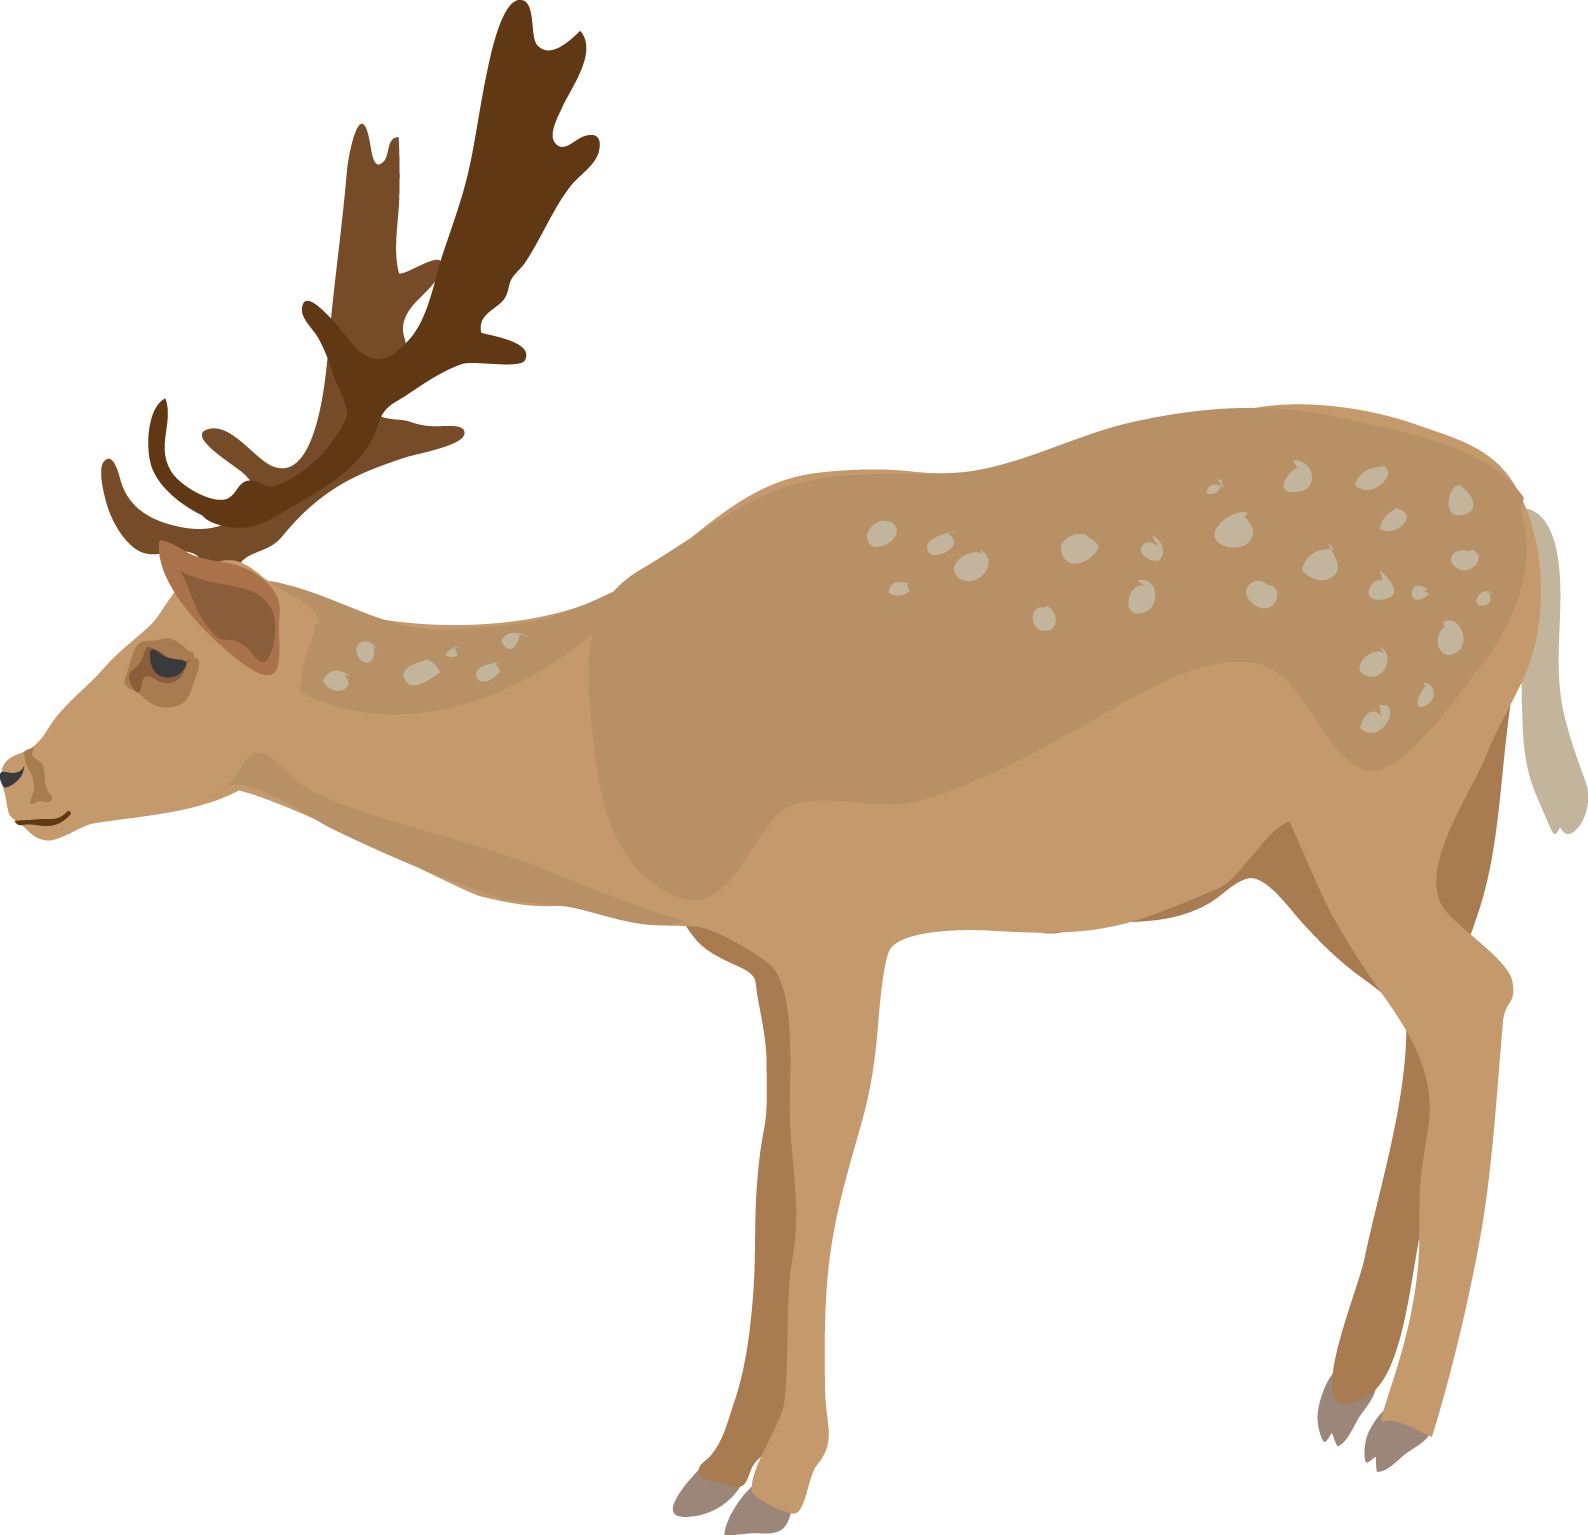 free vector deer clipart - photo #9